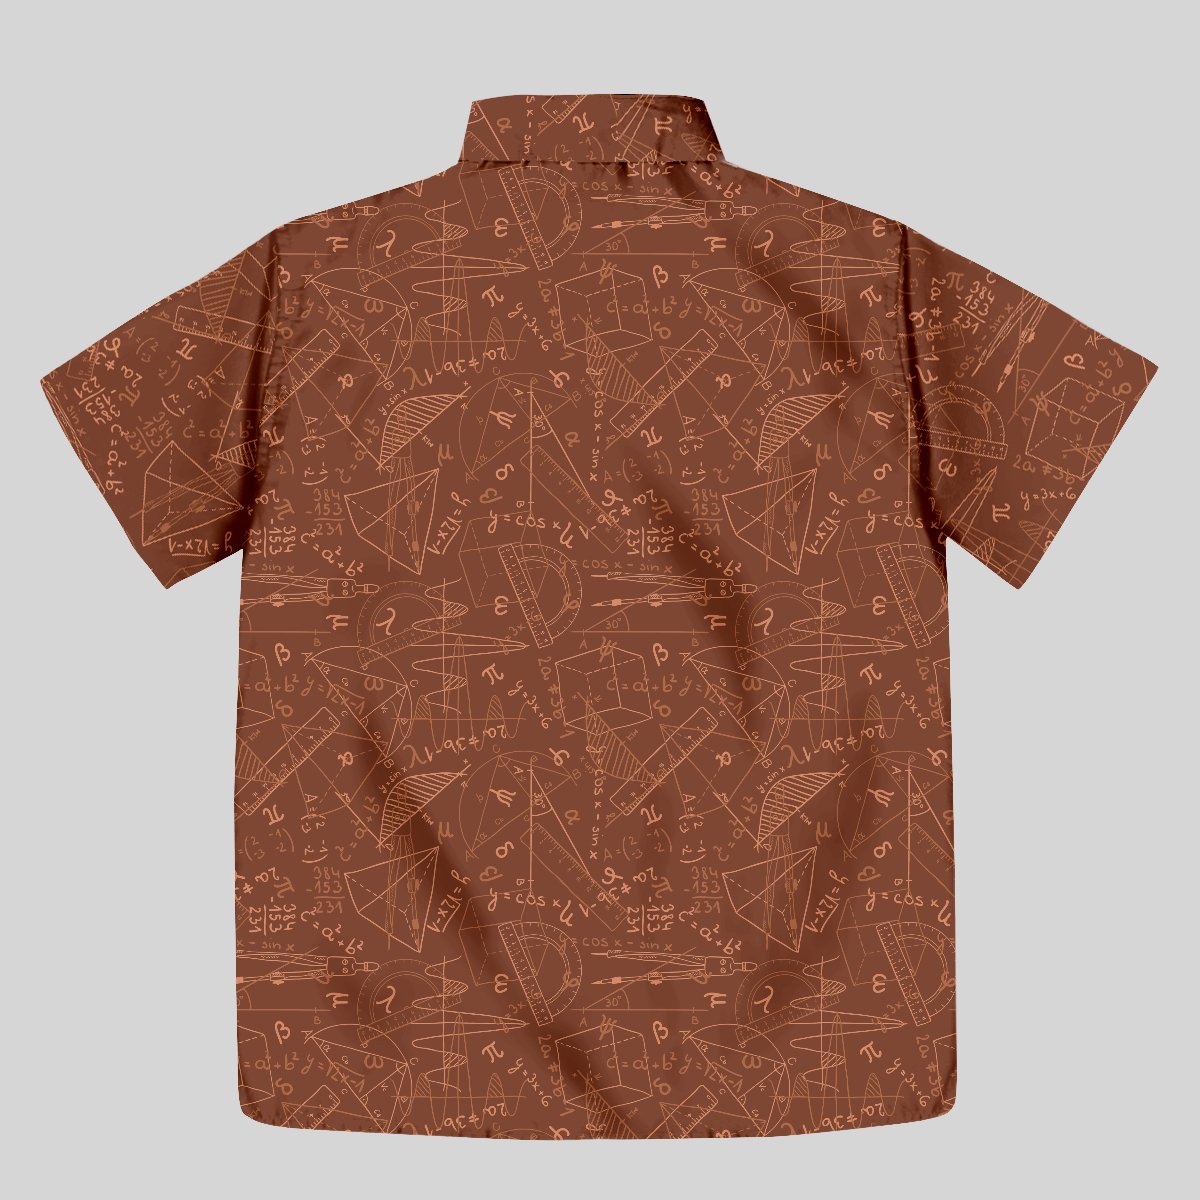 Mathematical Geometry Button Up Pocket Shirt - Geeksoutfit